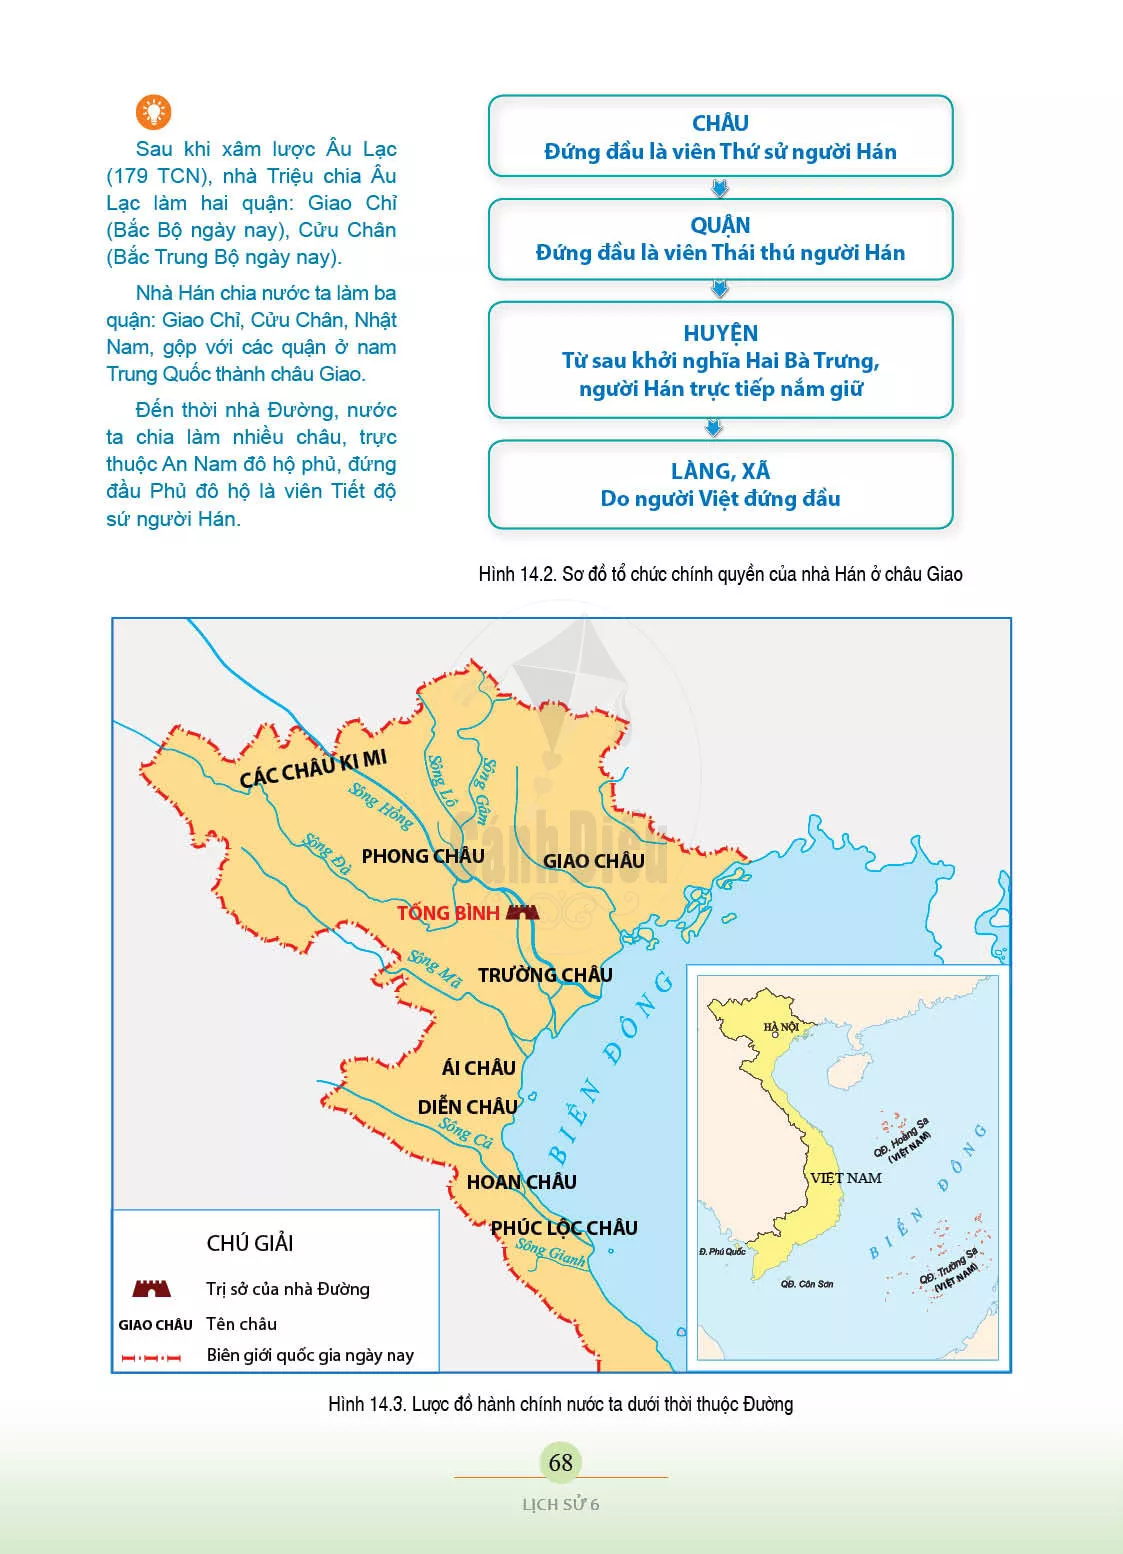 Bài 14. Chính sách cai trị của các triều đại phong kiến phương Bắc và chuyển biển kinh tế, xã hội, văn hoá của Việt Nam thời Bắc thuộc